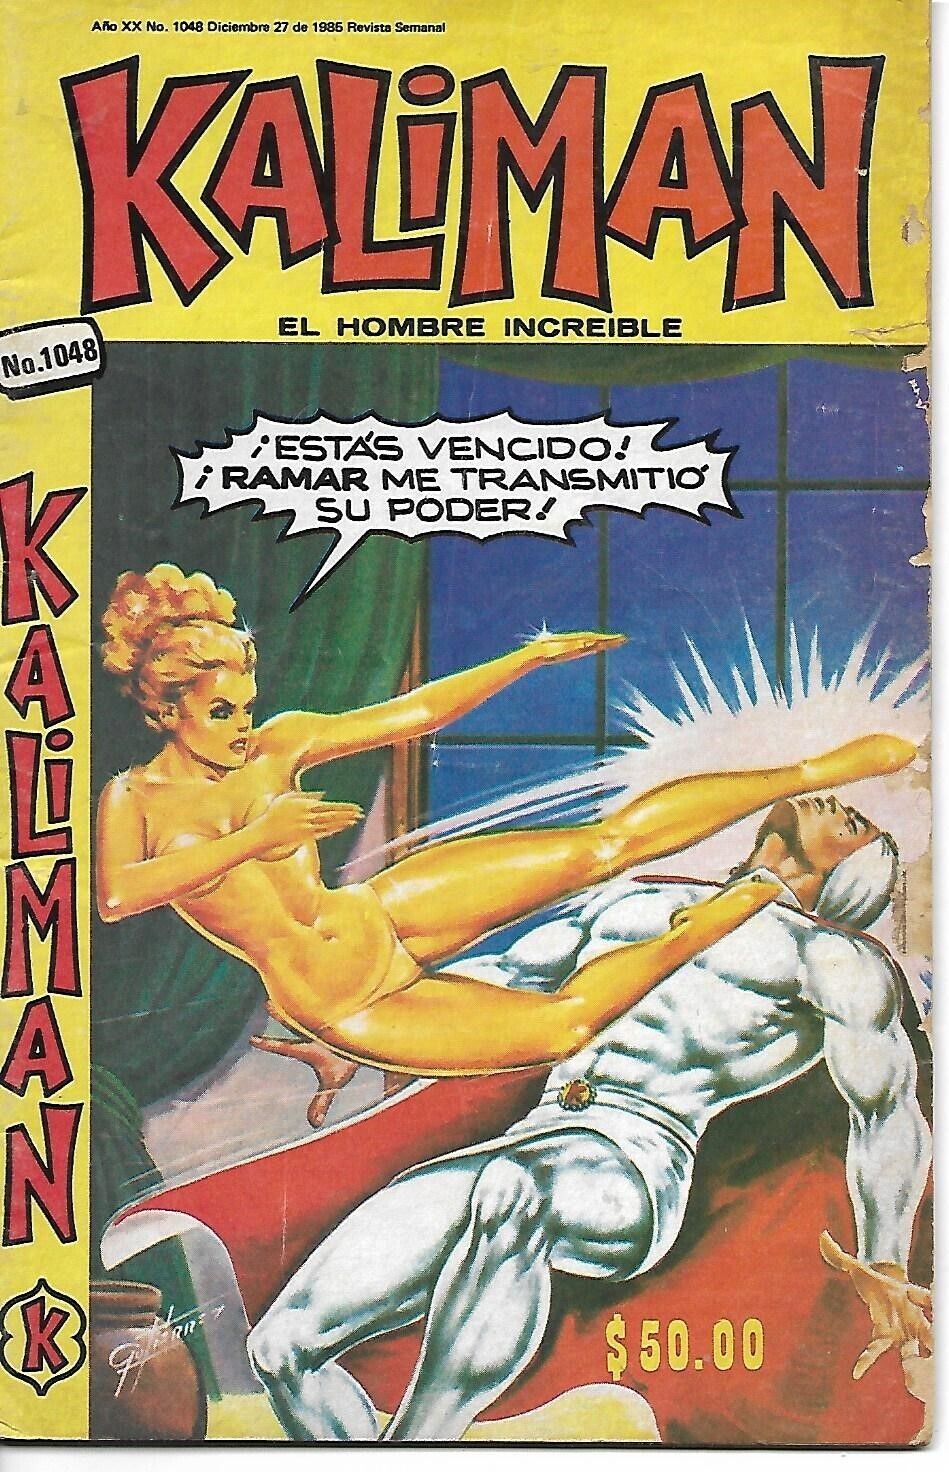 Kaliman El Hombre Increible #1048 - Diciembre 27, 1985